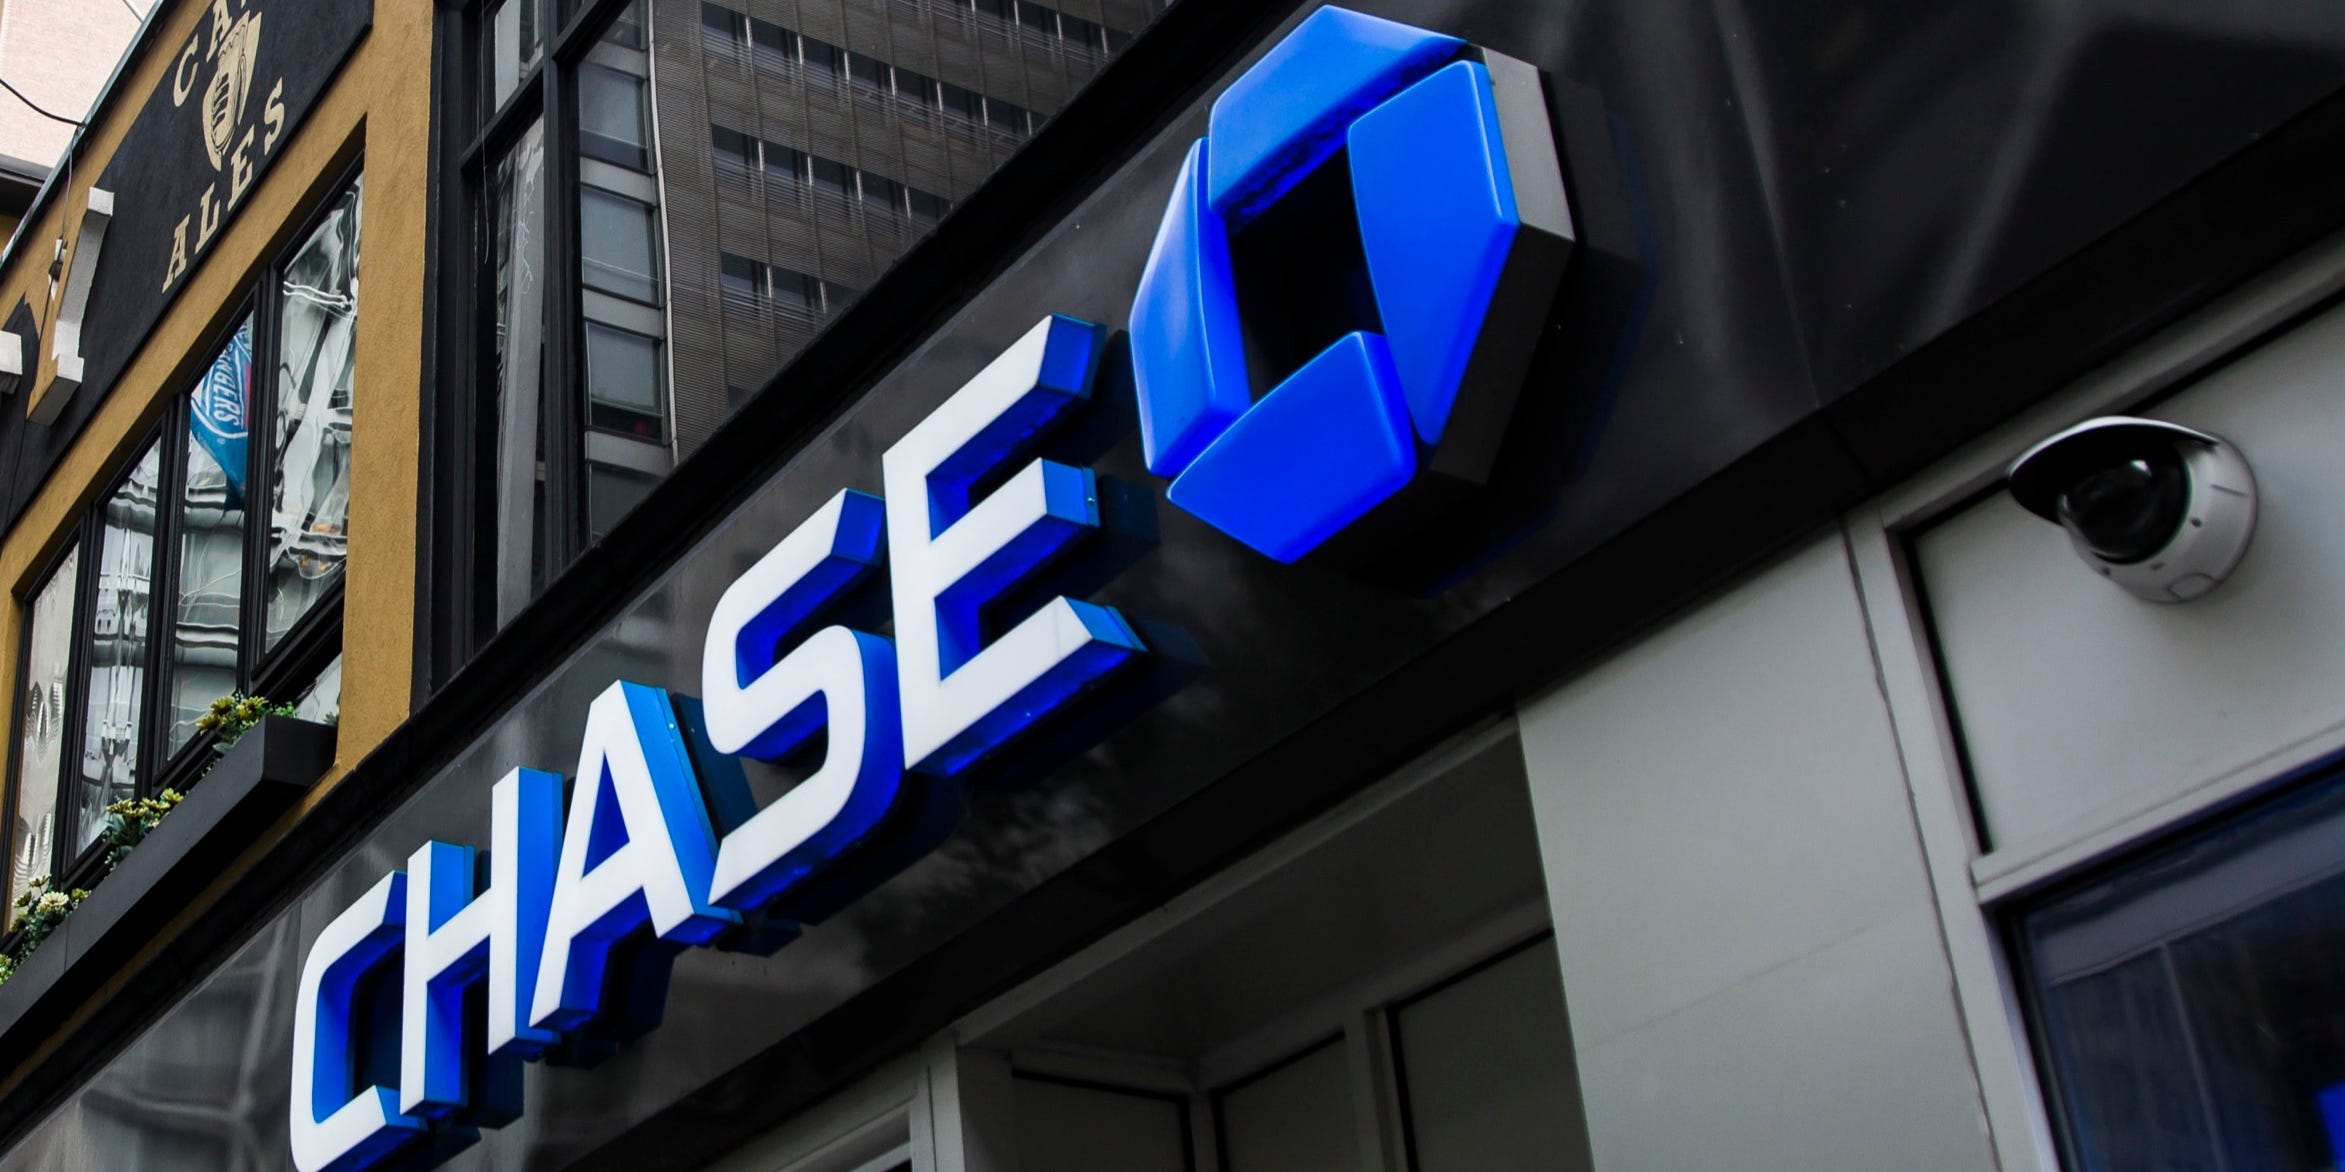 A Chase bank logo